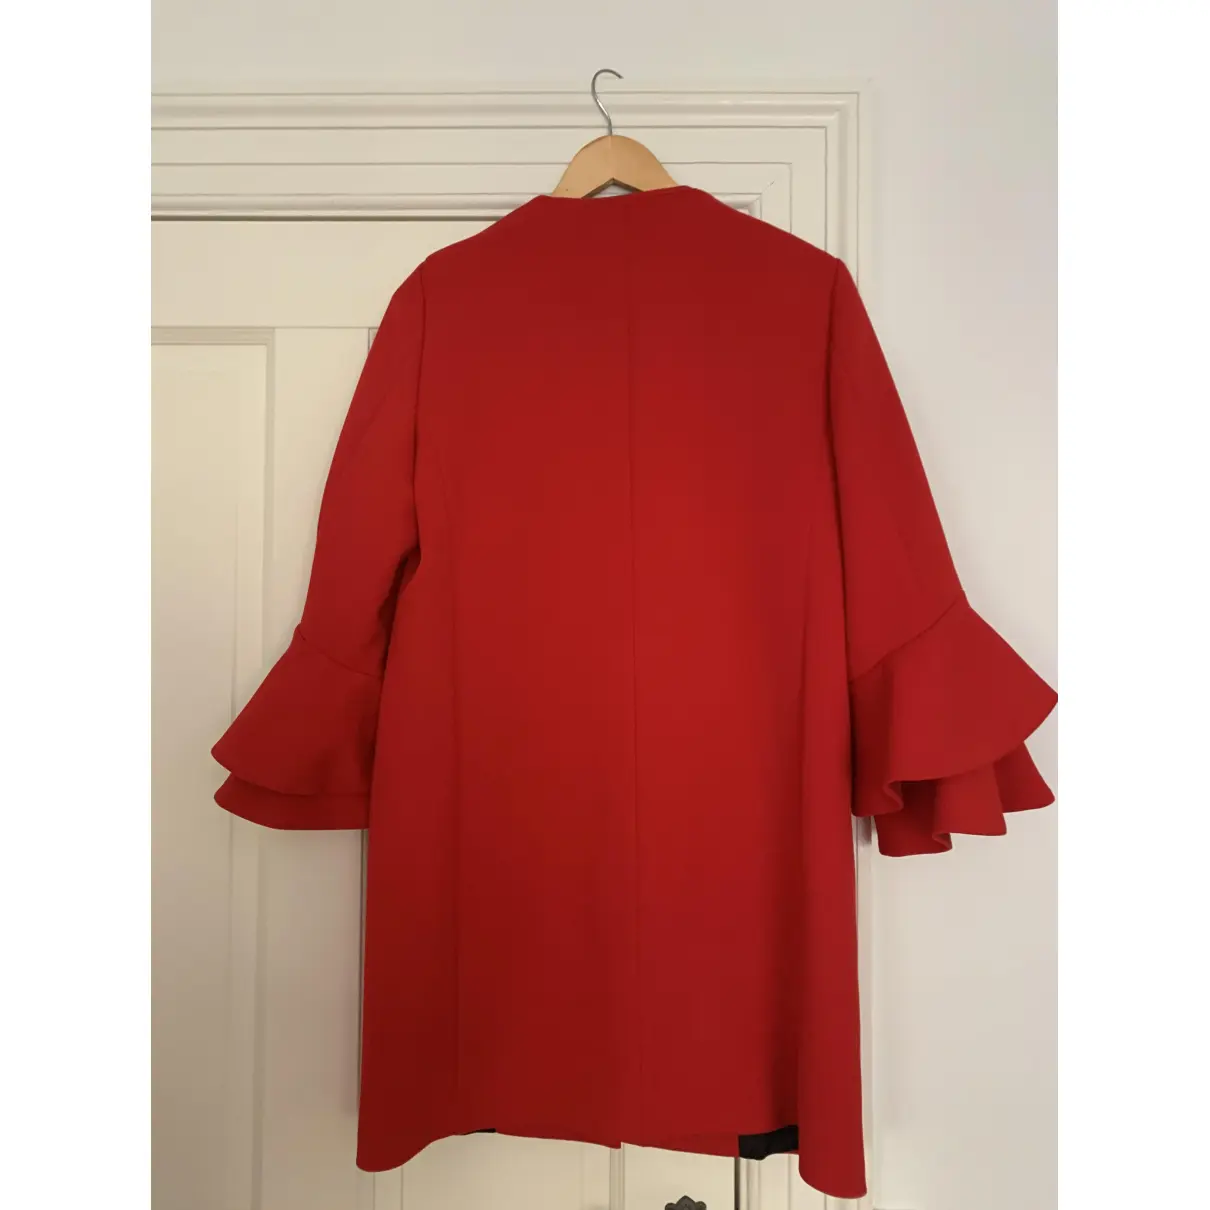 Buy Zara Red Suede Jacket online